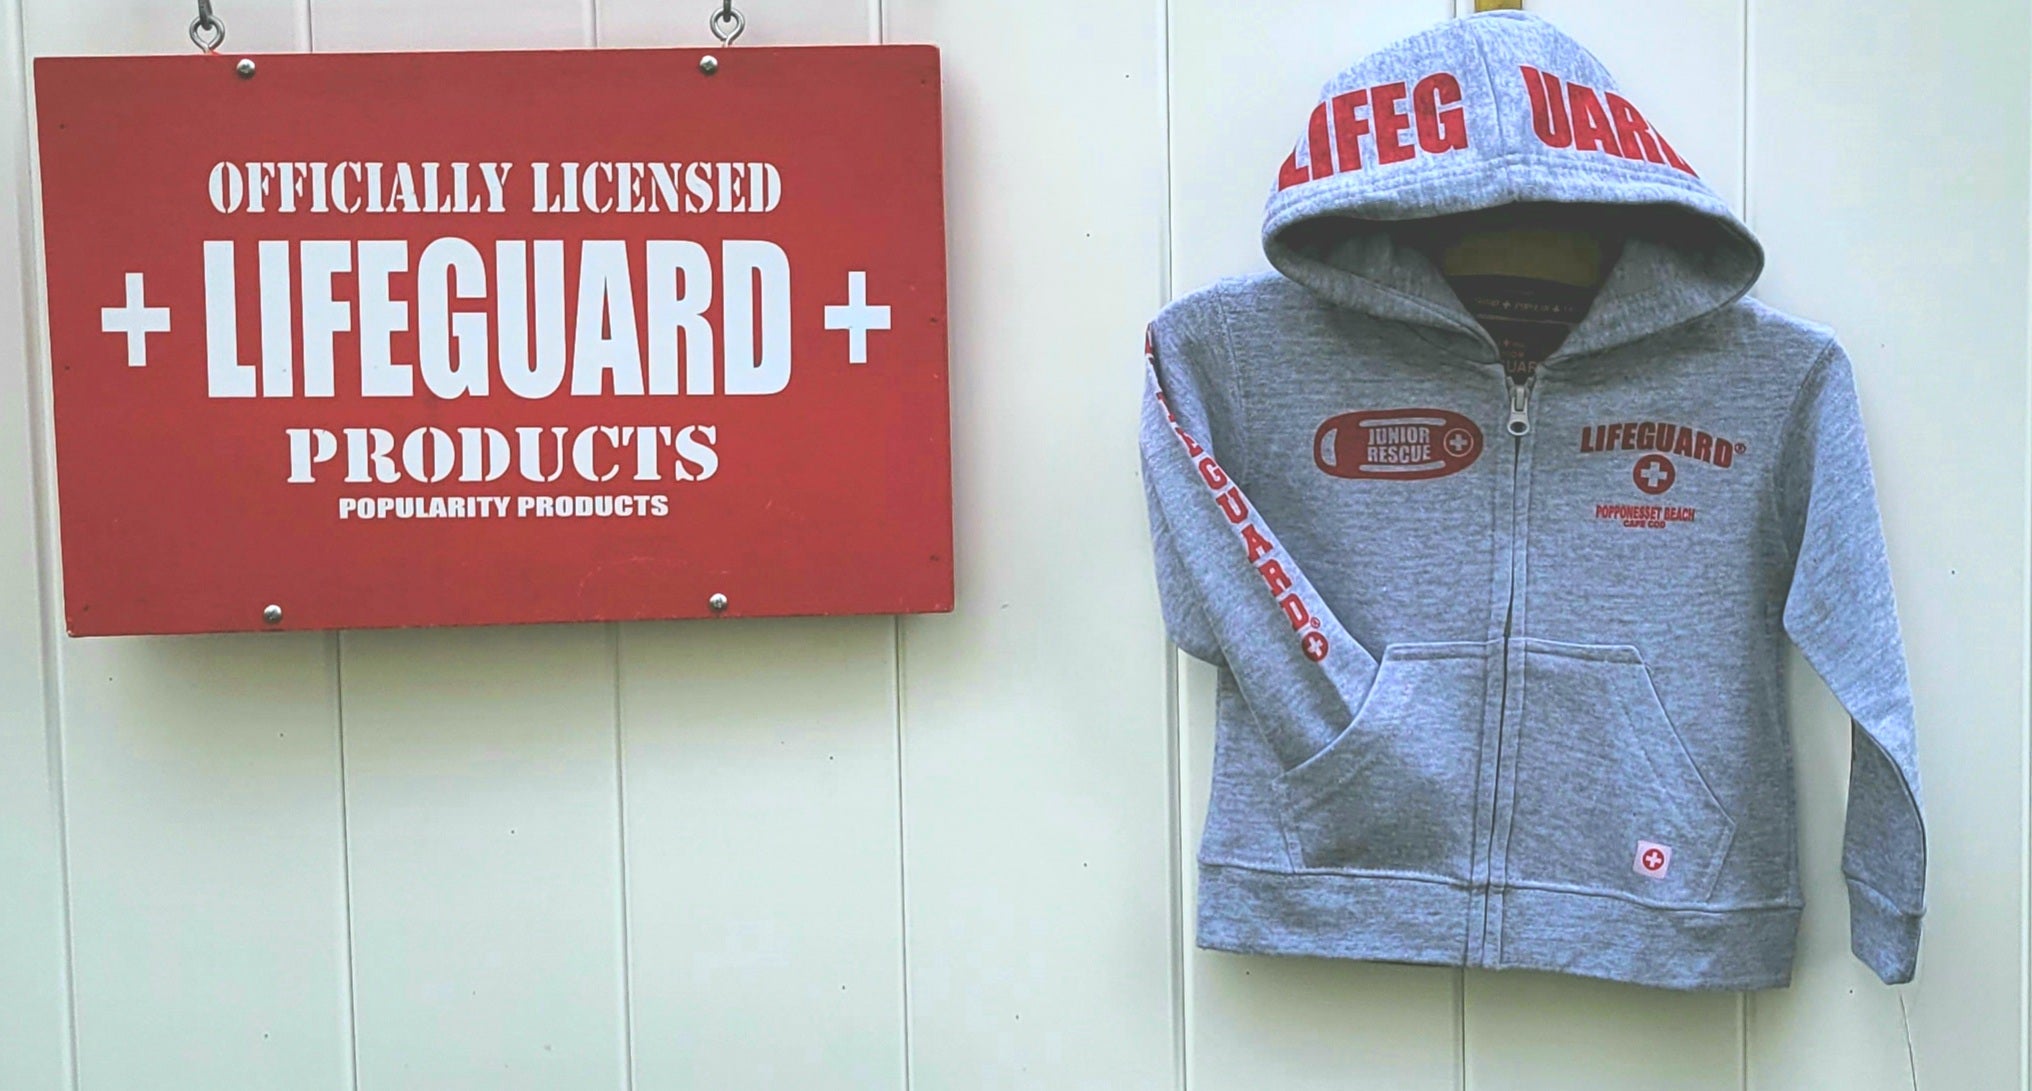 Lifeguard zip up hoodie